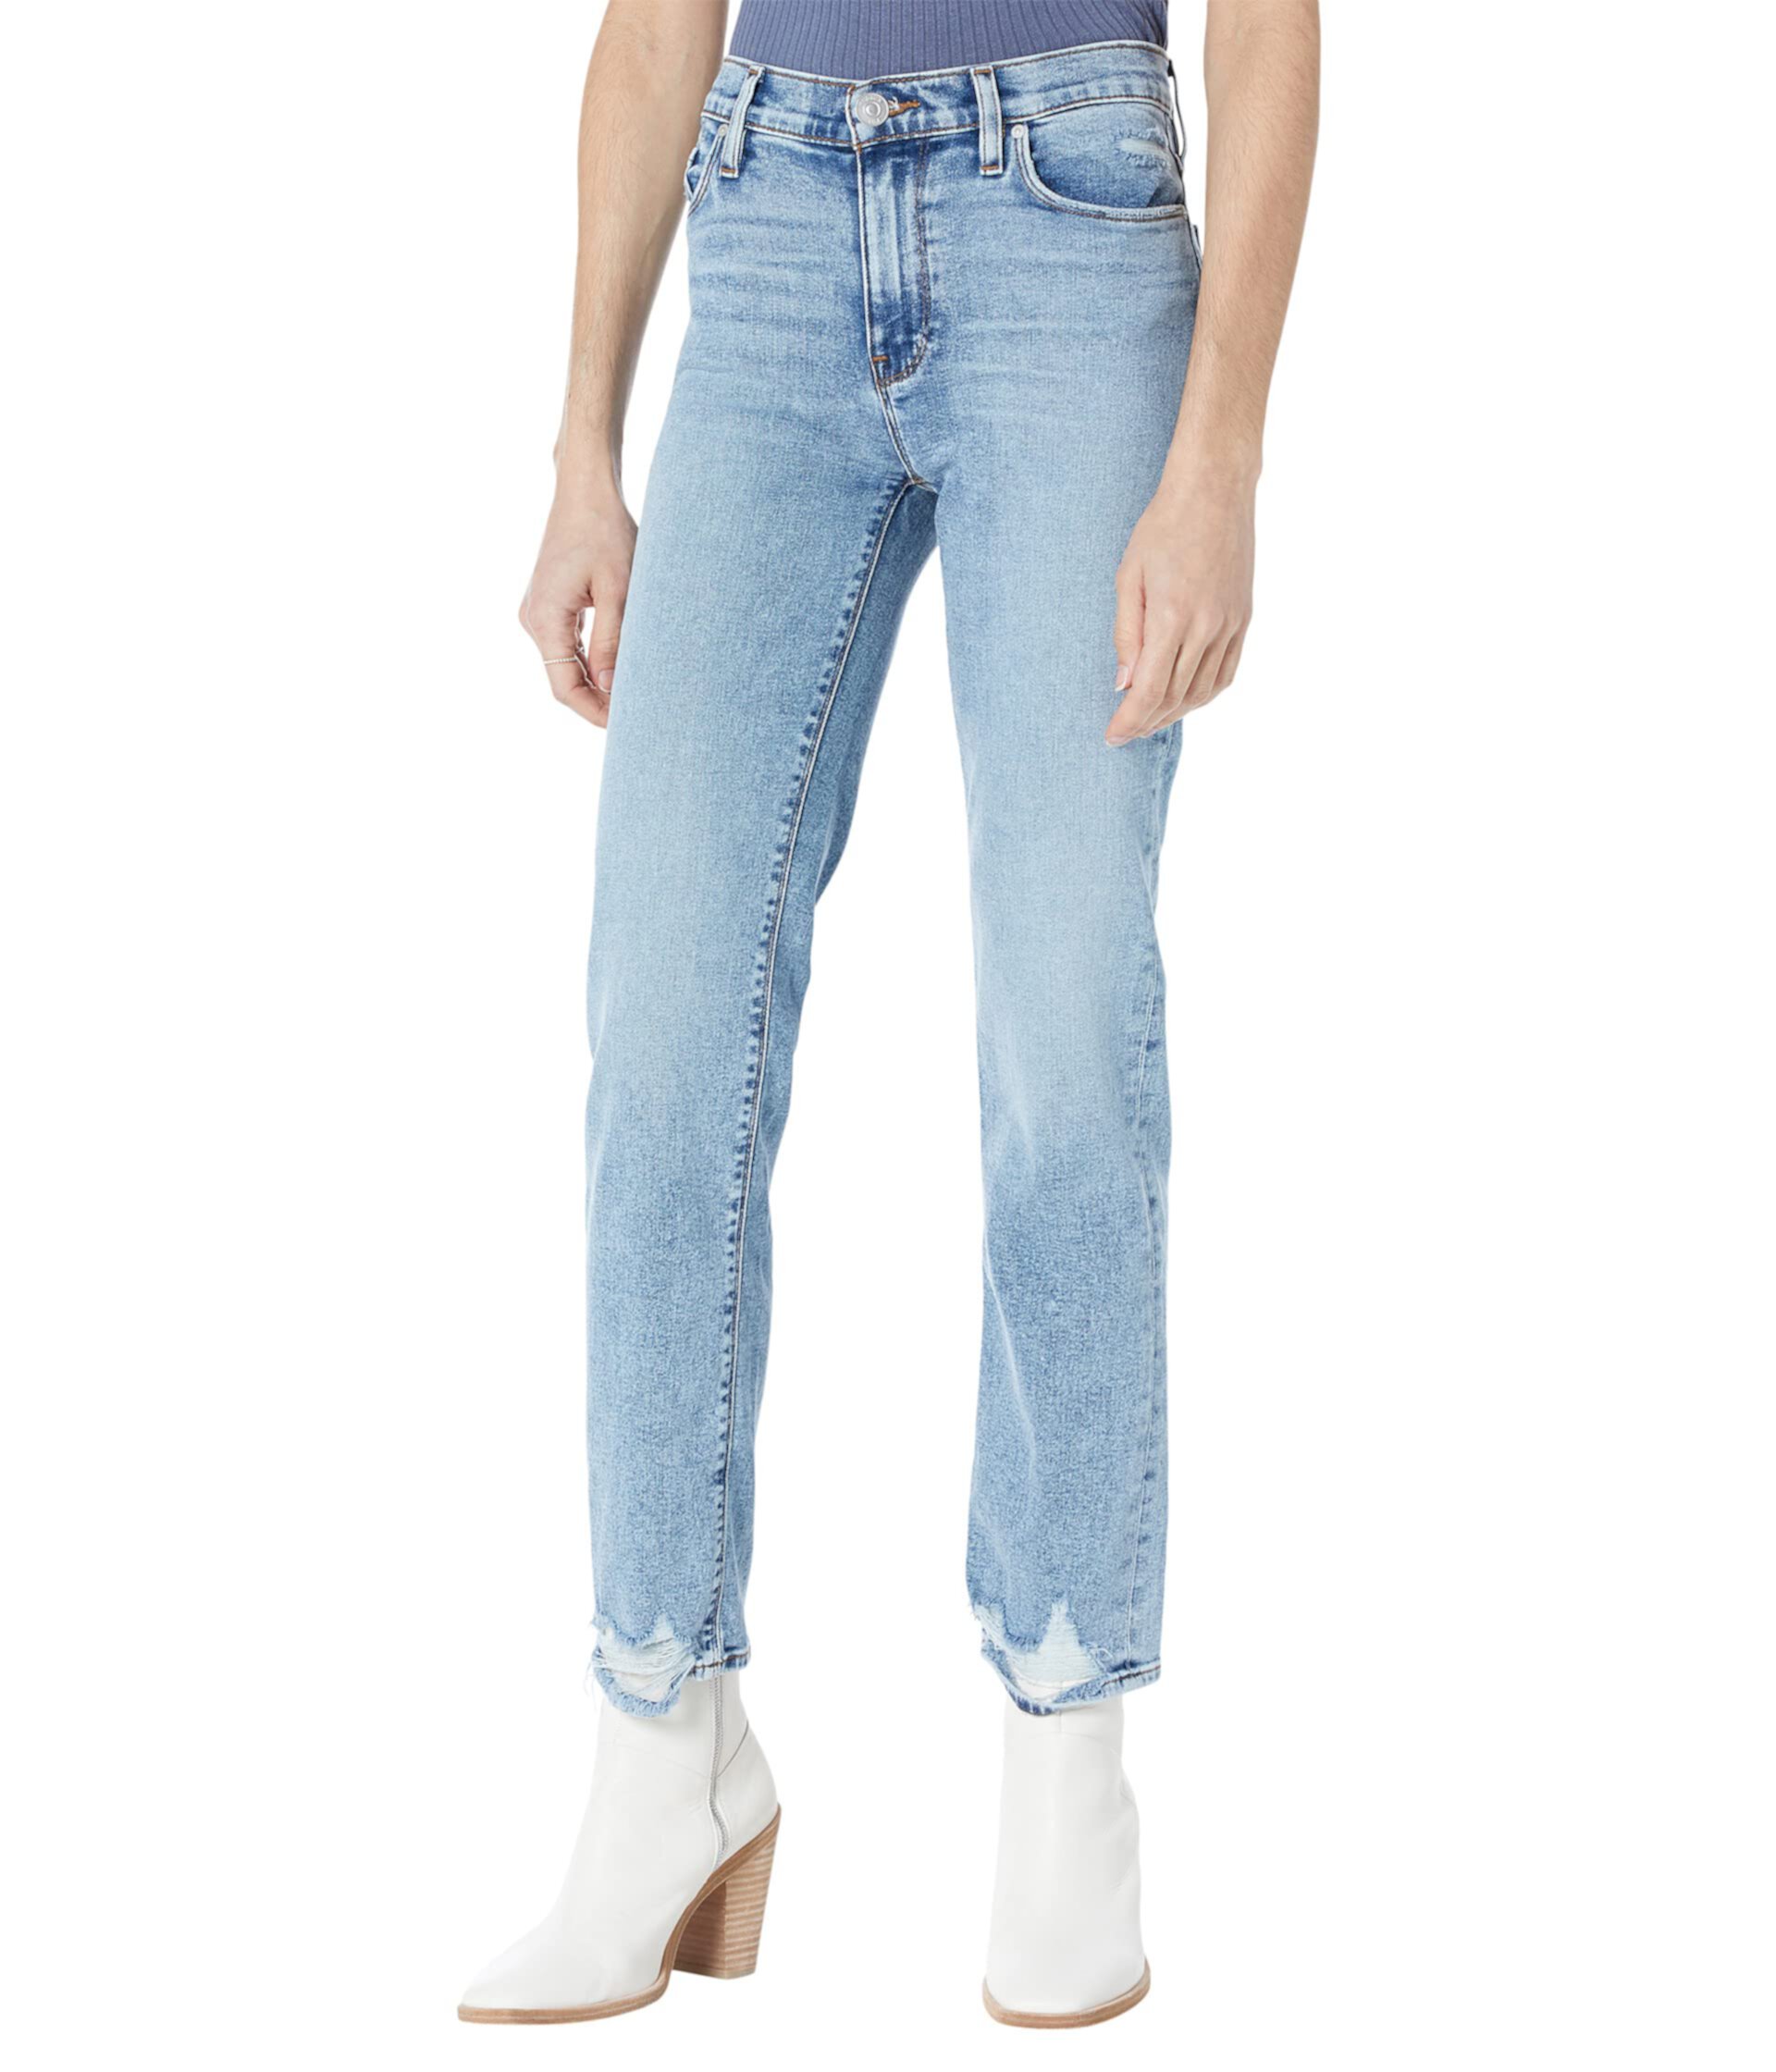 Прямые лодыжки со средней посадкой Nico в Superstar Hudson Jeans